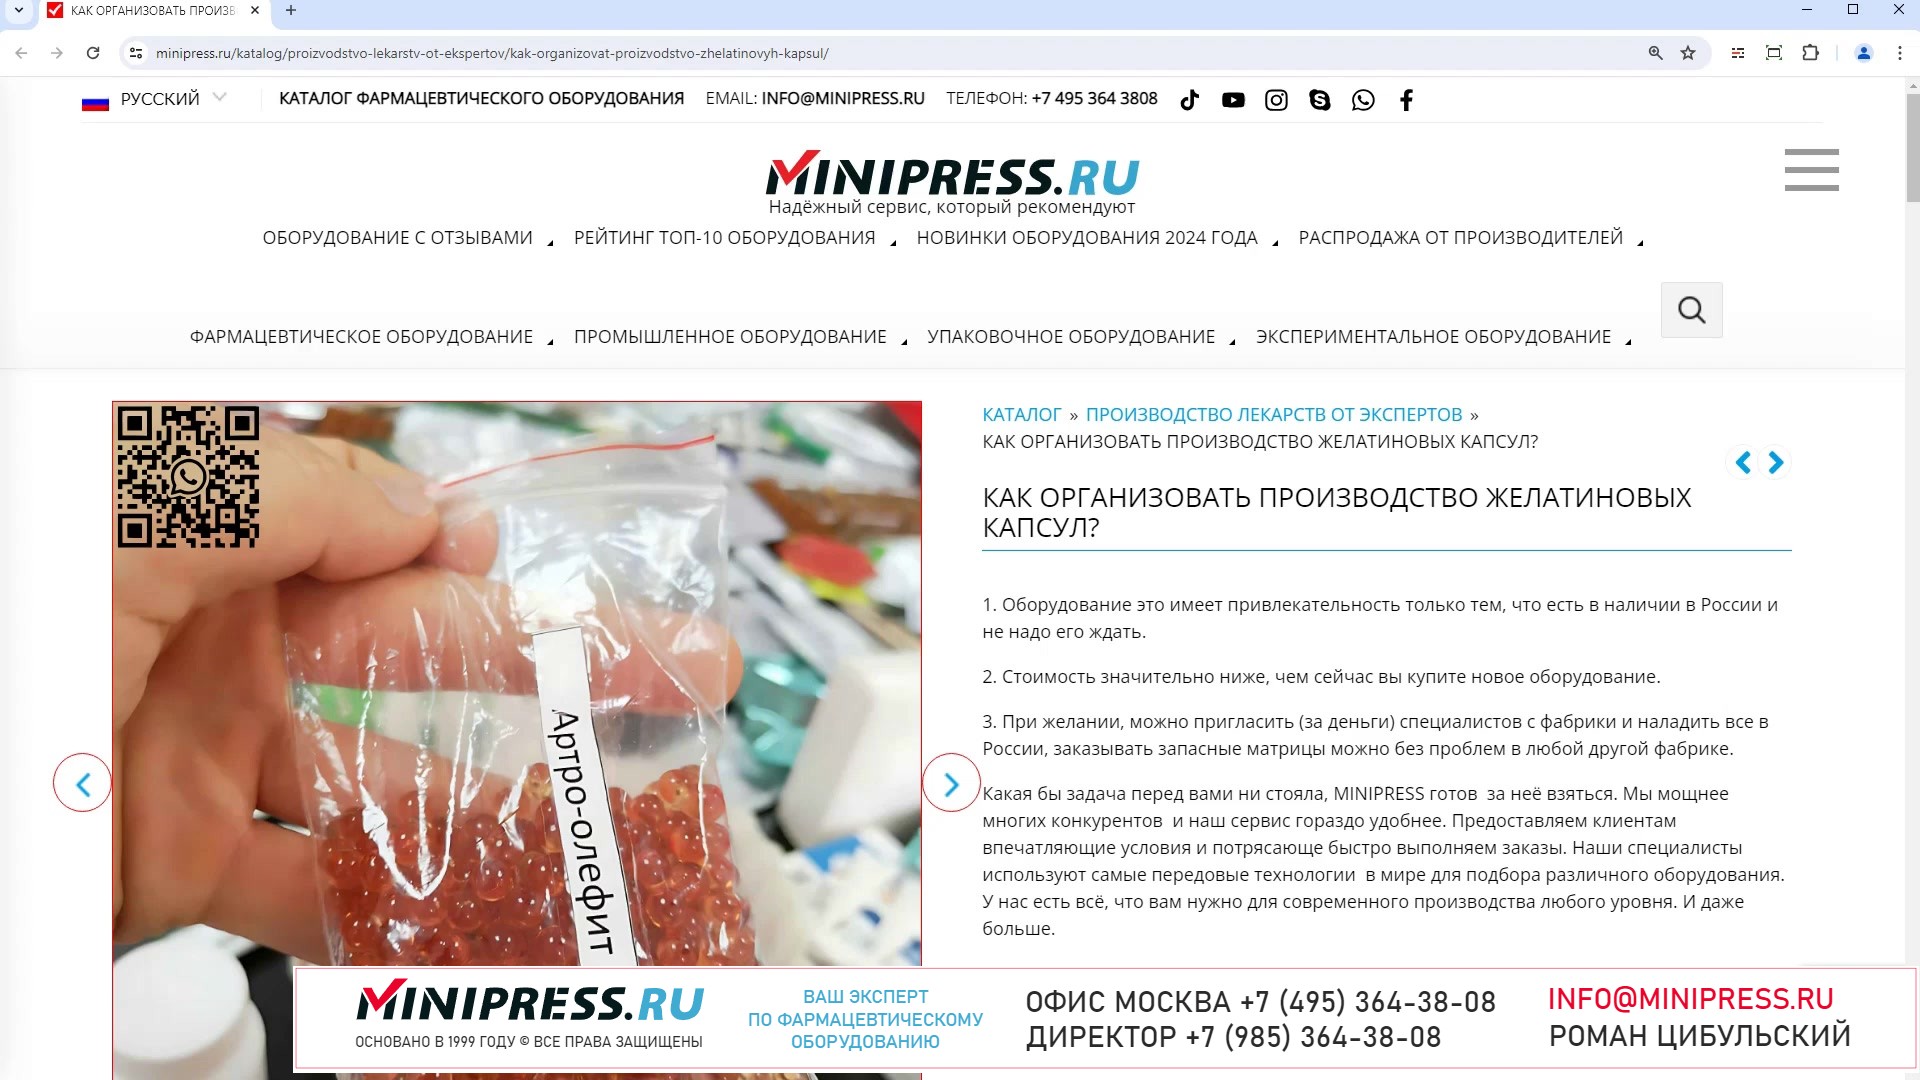 Minipress.ru Как организовать производство желатиновых капсул